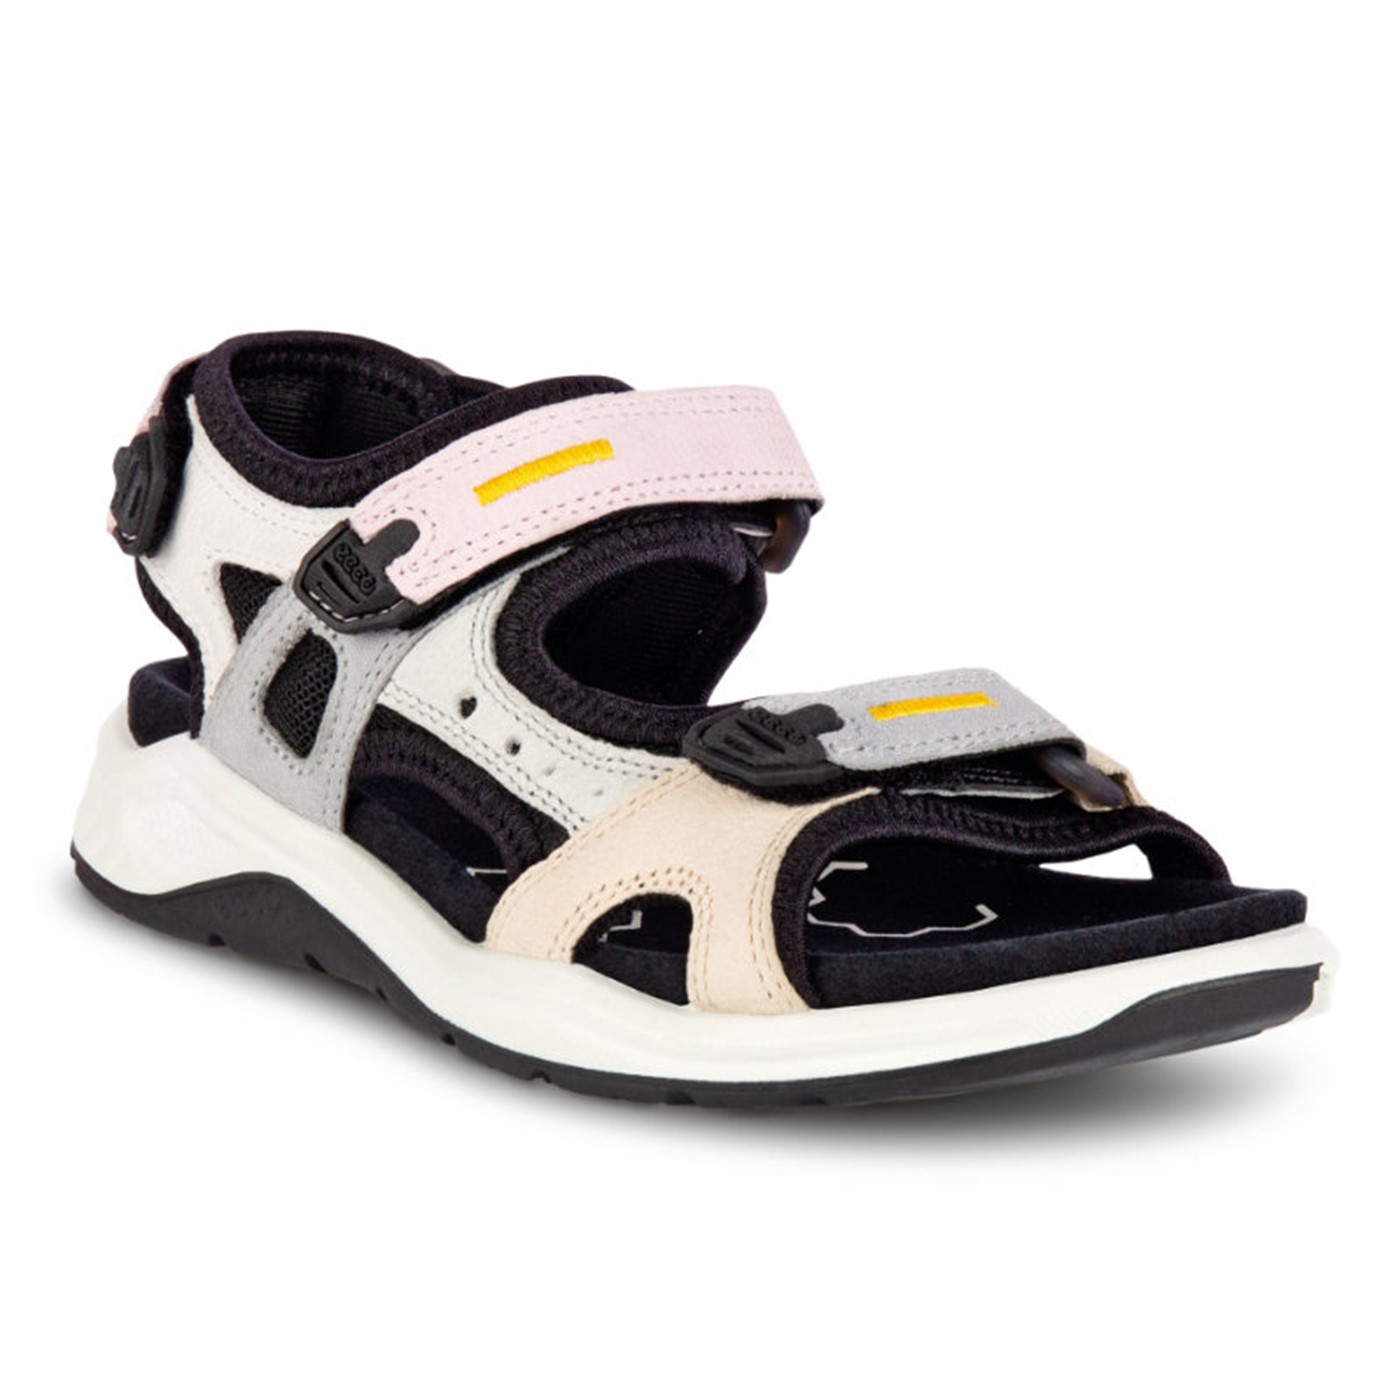 Deqenereret polet vasketøj sporty sandal til børn i lys læder (710642)